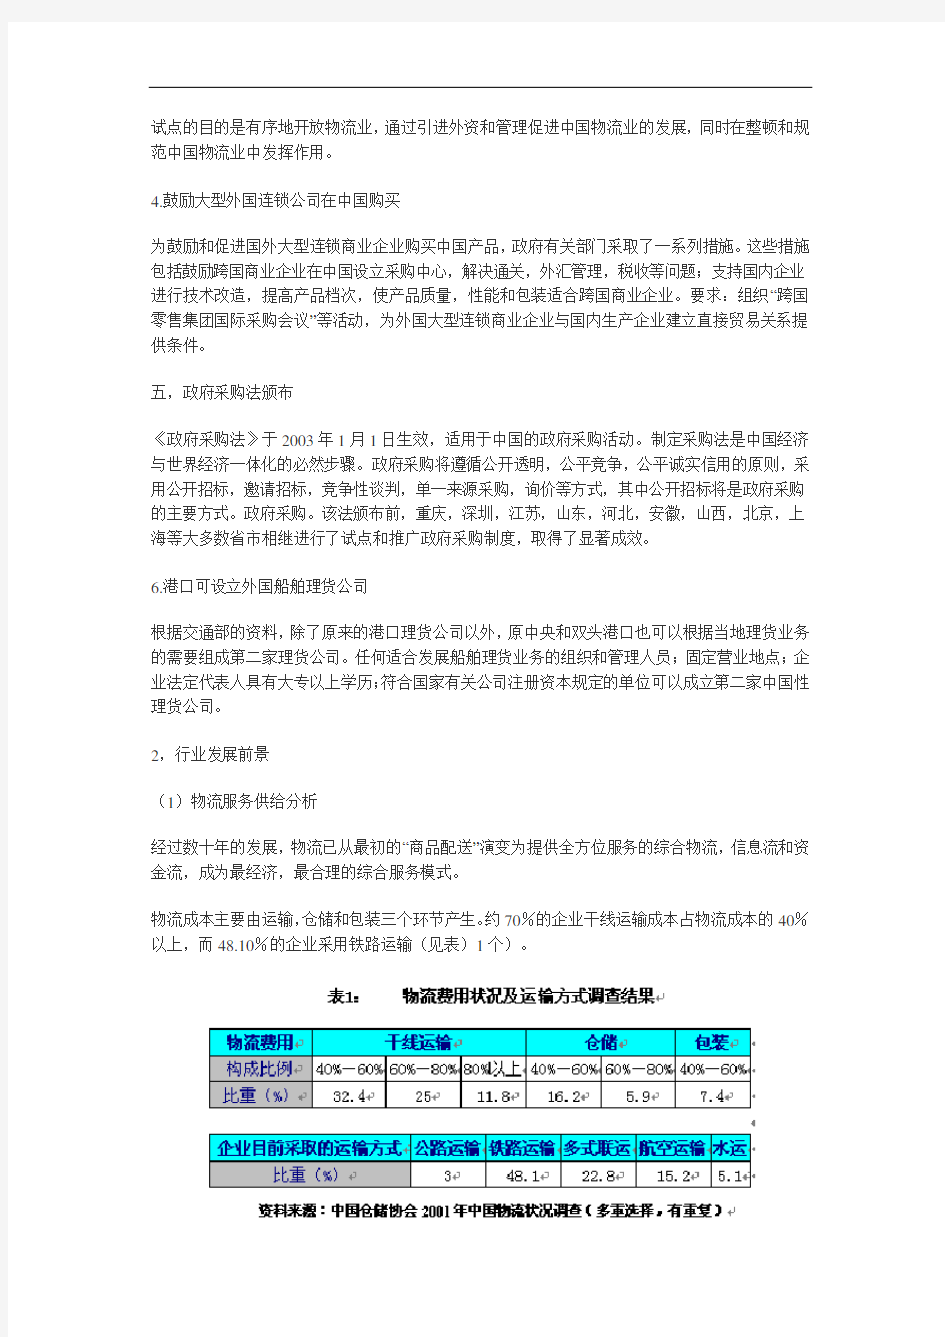 2003年度中国物流业发展报告